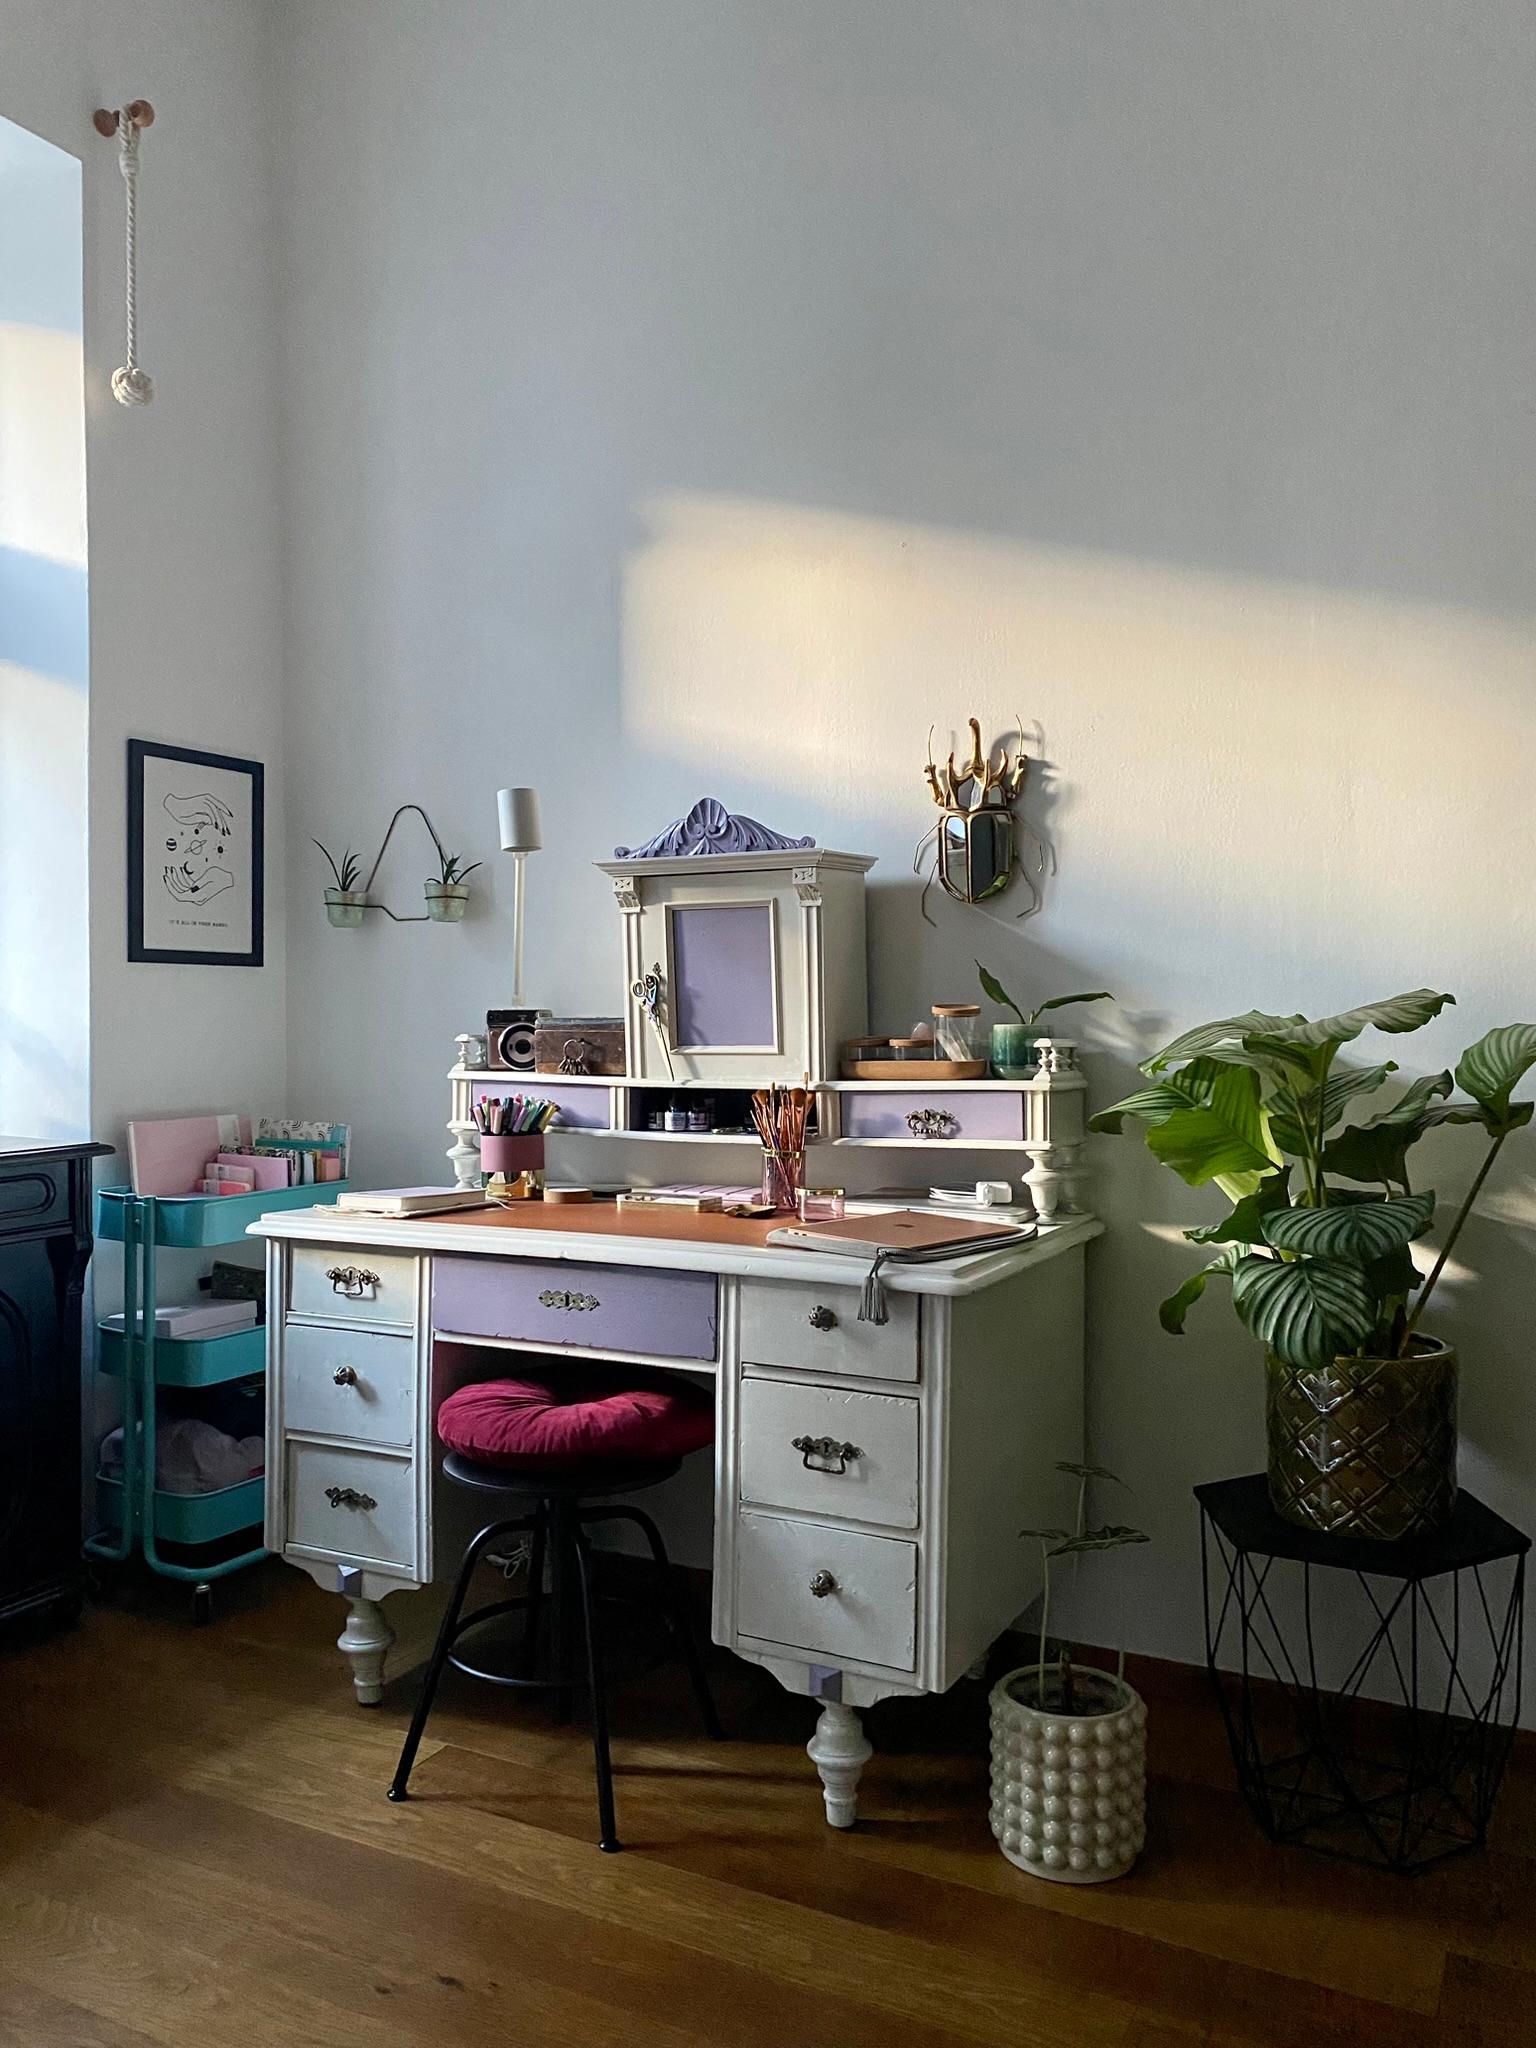 Sonne an meinem Schreibtisch ✨
#Schreibtisch #kreativ #Kreativplatz #Sonne #Pflanzen #bunt #pastell